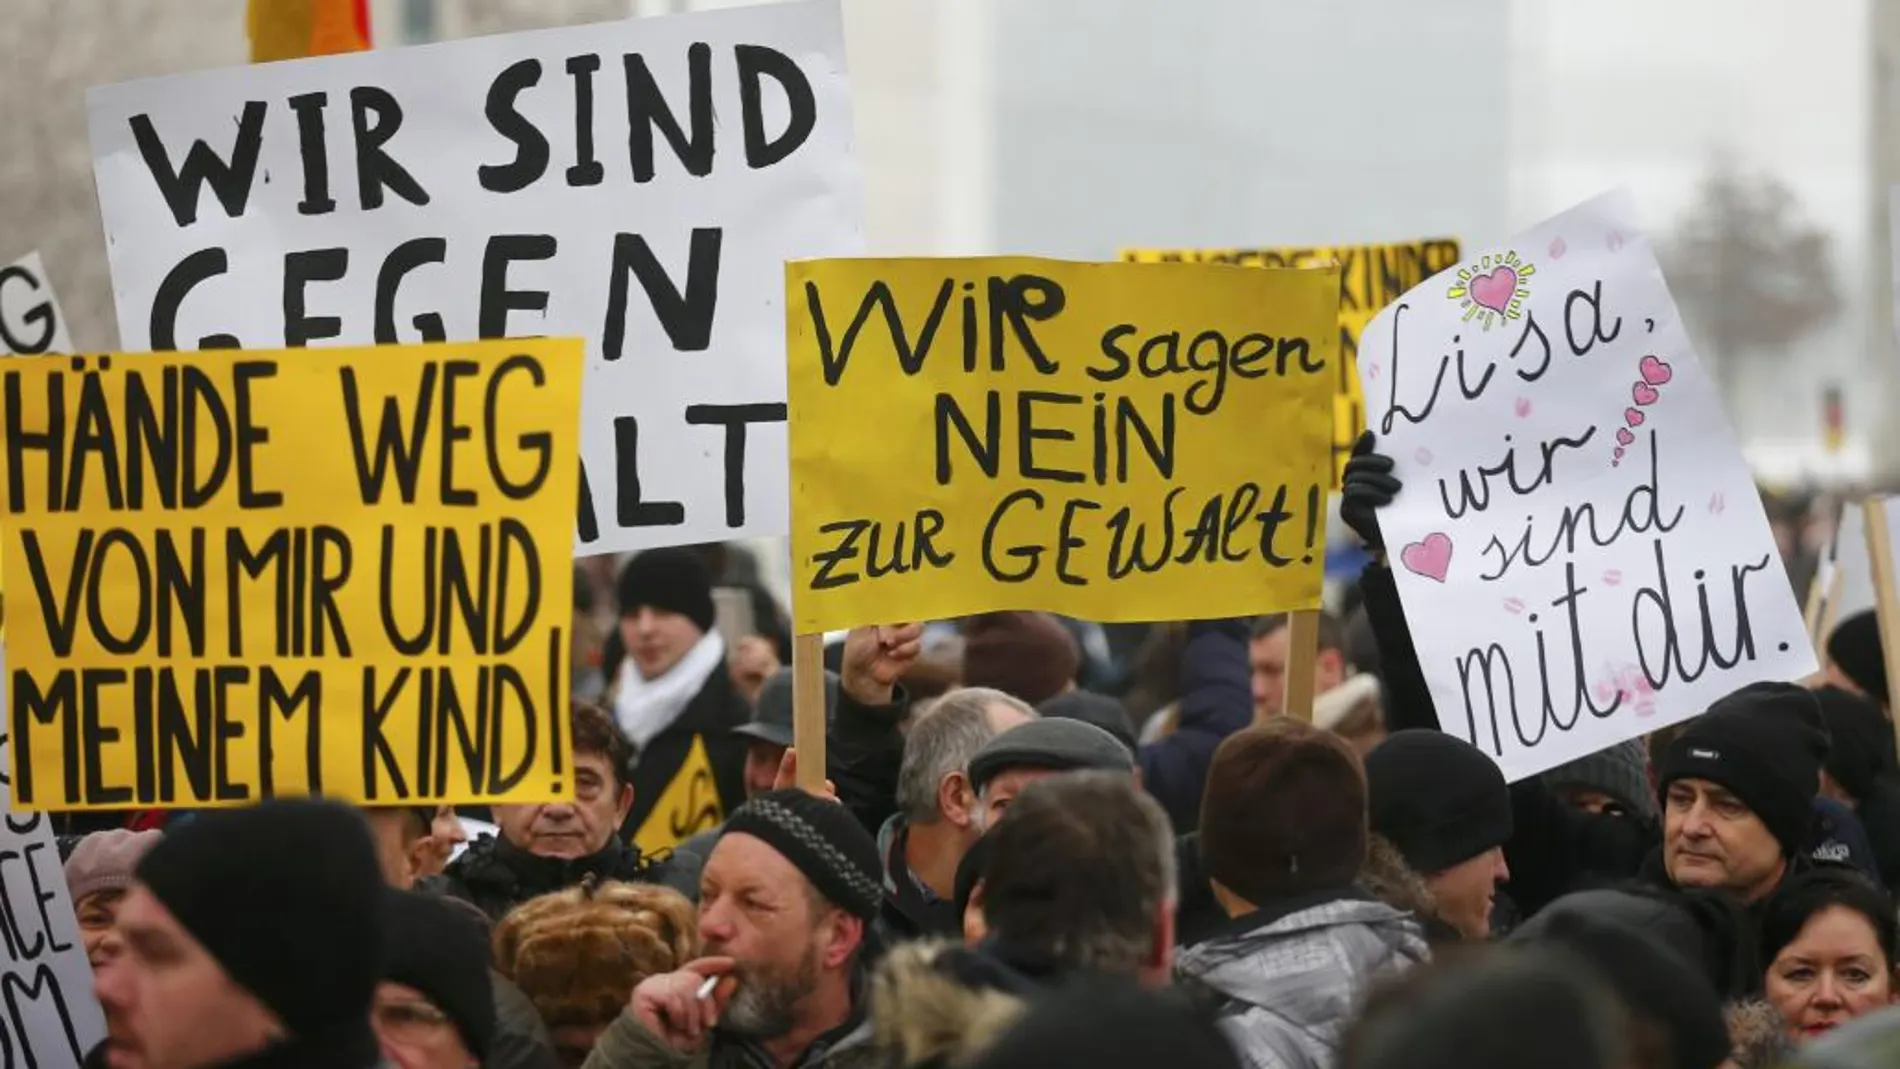 Movilizaciones en Berlín tras los abusos sexuales perpetrados por inmigrantes en la ciudad de Colonia durante la noche de Año Nuevo